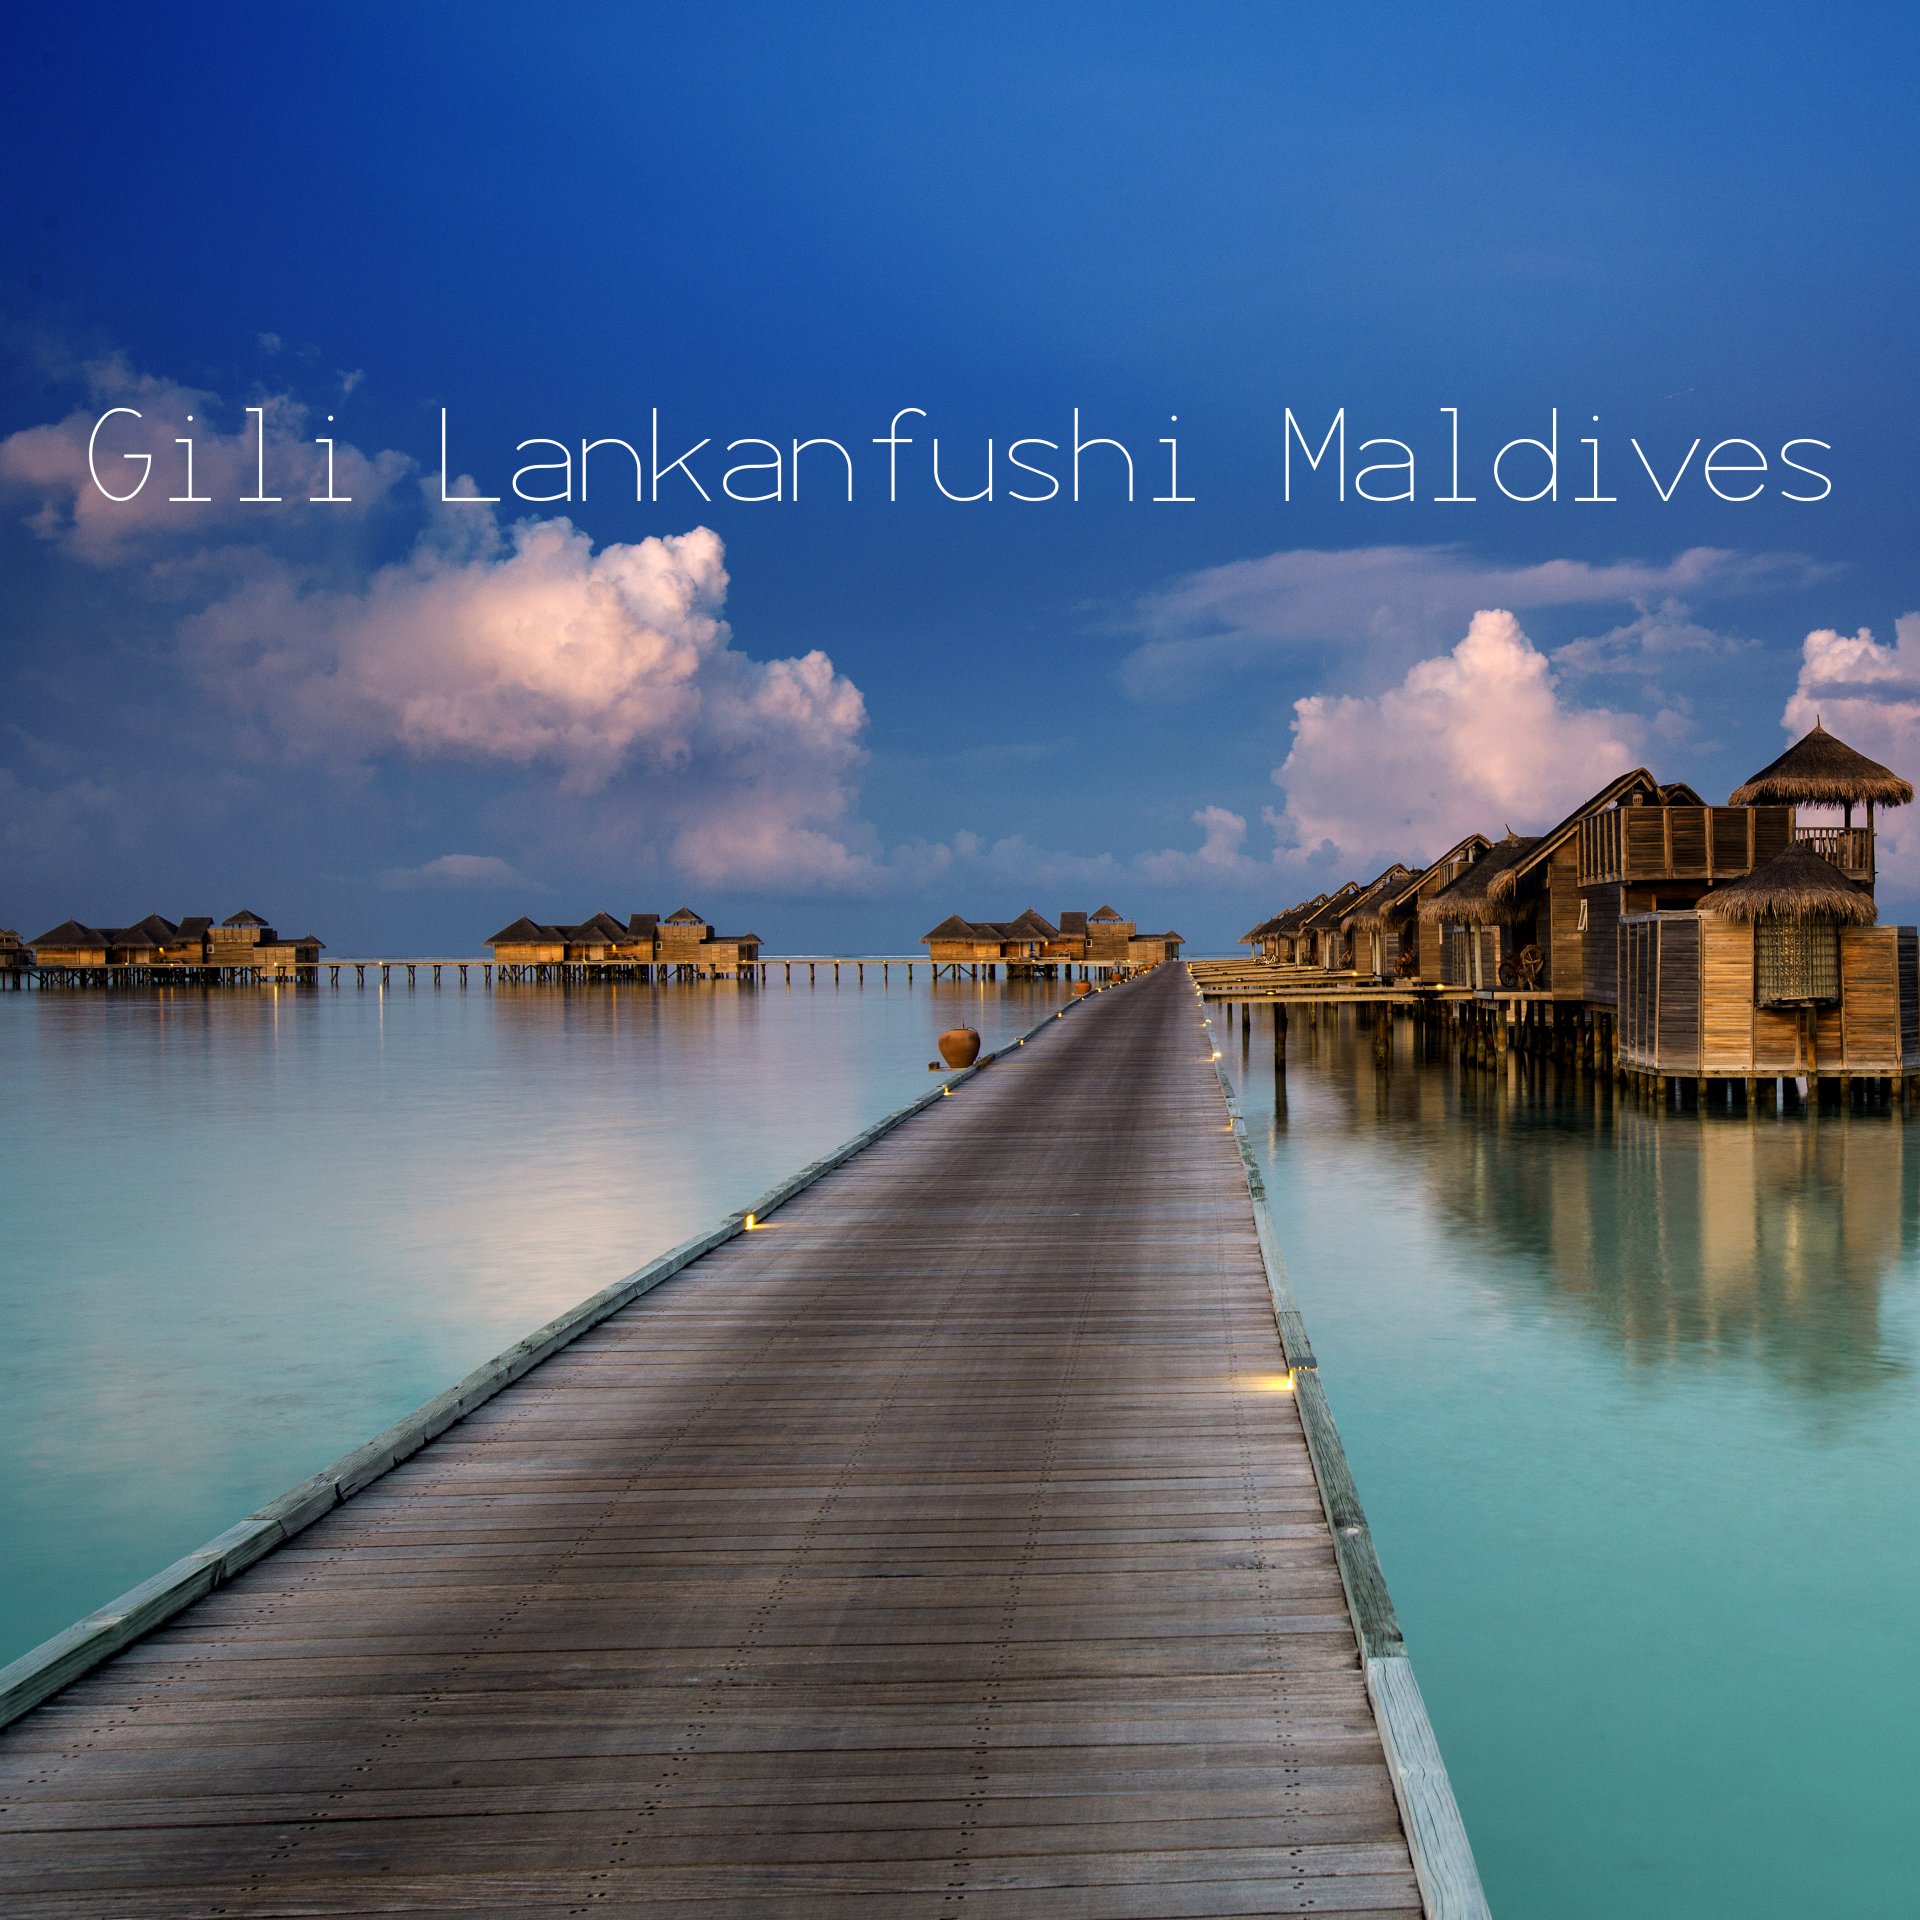 พาชม 1 ในรีสอร์ทที่ดีที่สุดของมัลดีฟส์ "Gili Lankanfushi"